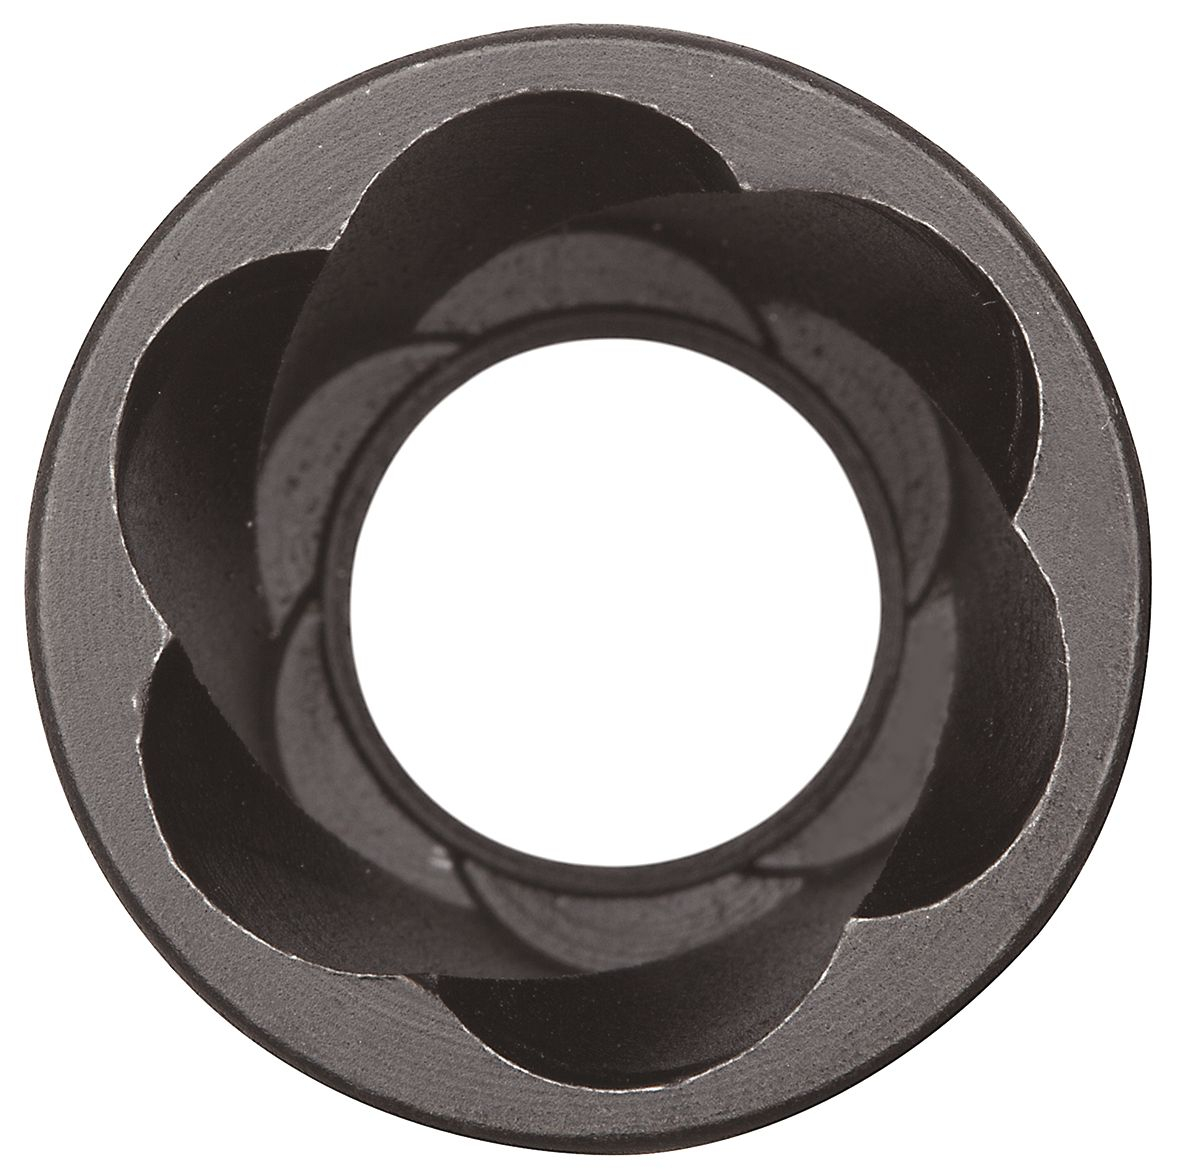 GEDORE R68003010 Spiralnutenausdreher 1/2" 10-19mm 10-teilig Detail 2 ZOOM